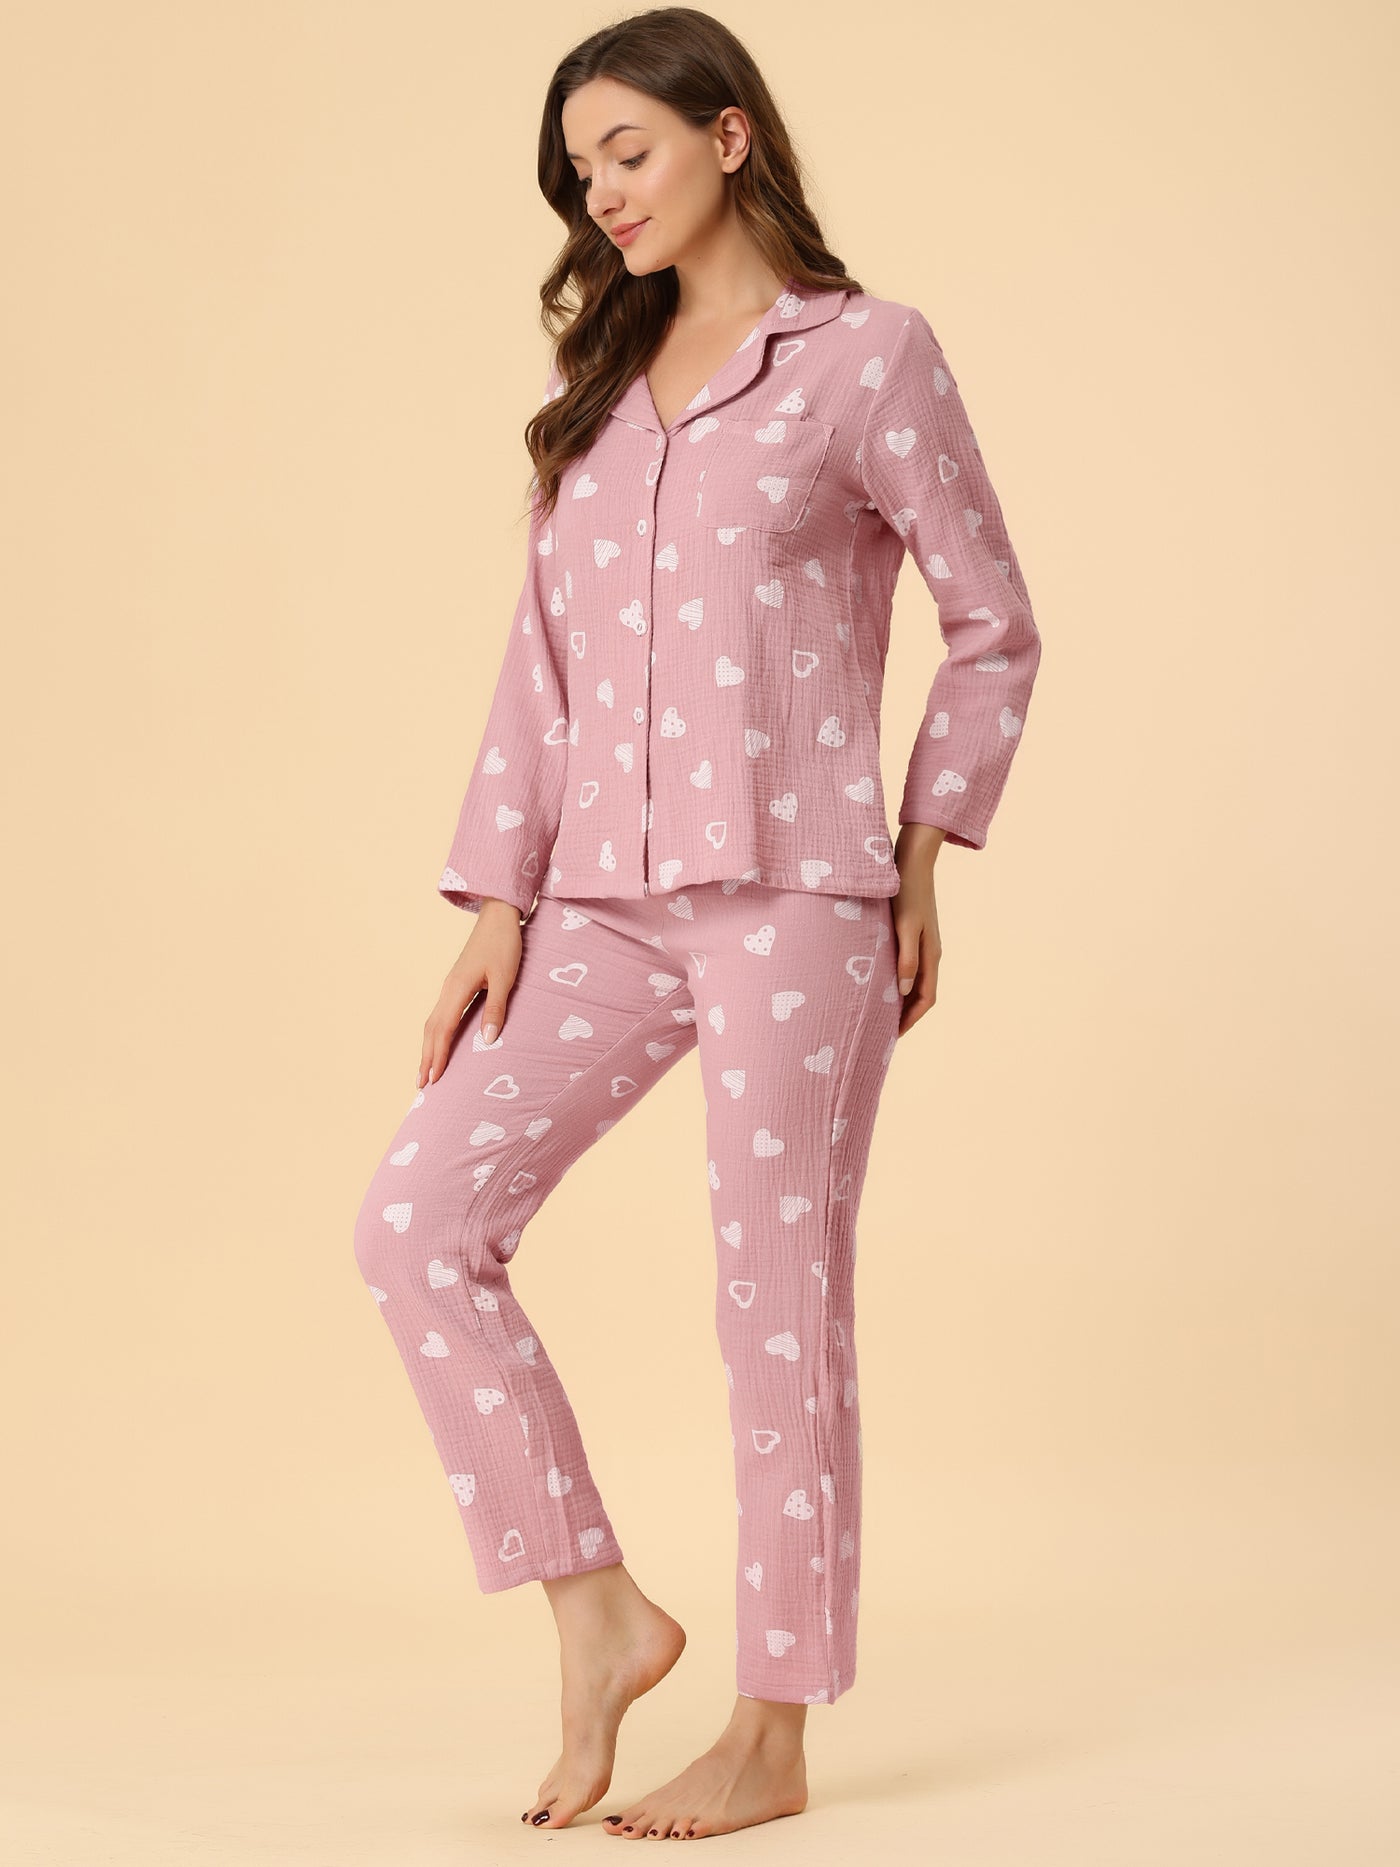 Allegra K Sleepwear Heart Lounge Button Down Nightwear 2pcs Pajama Sets